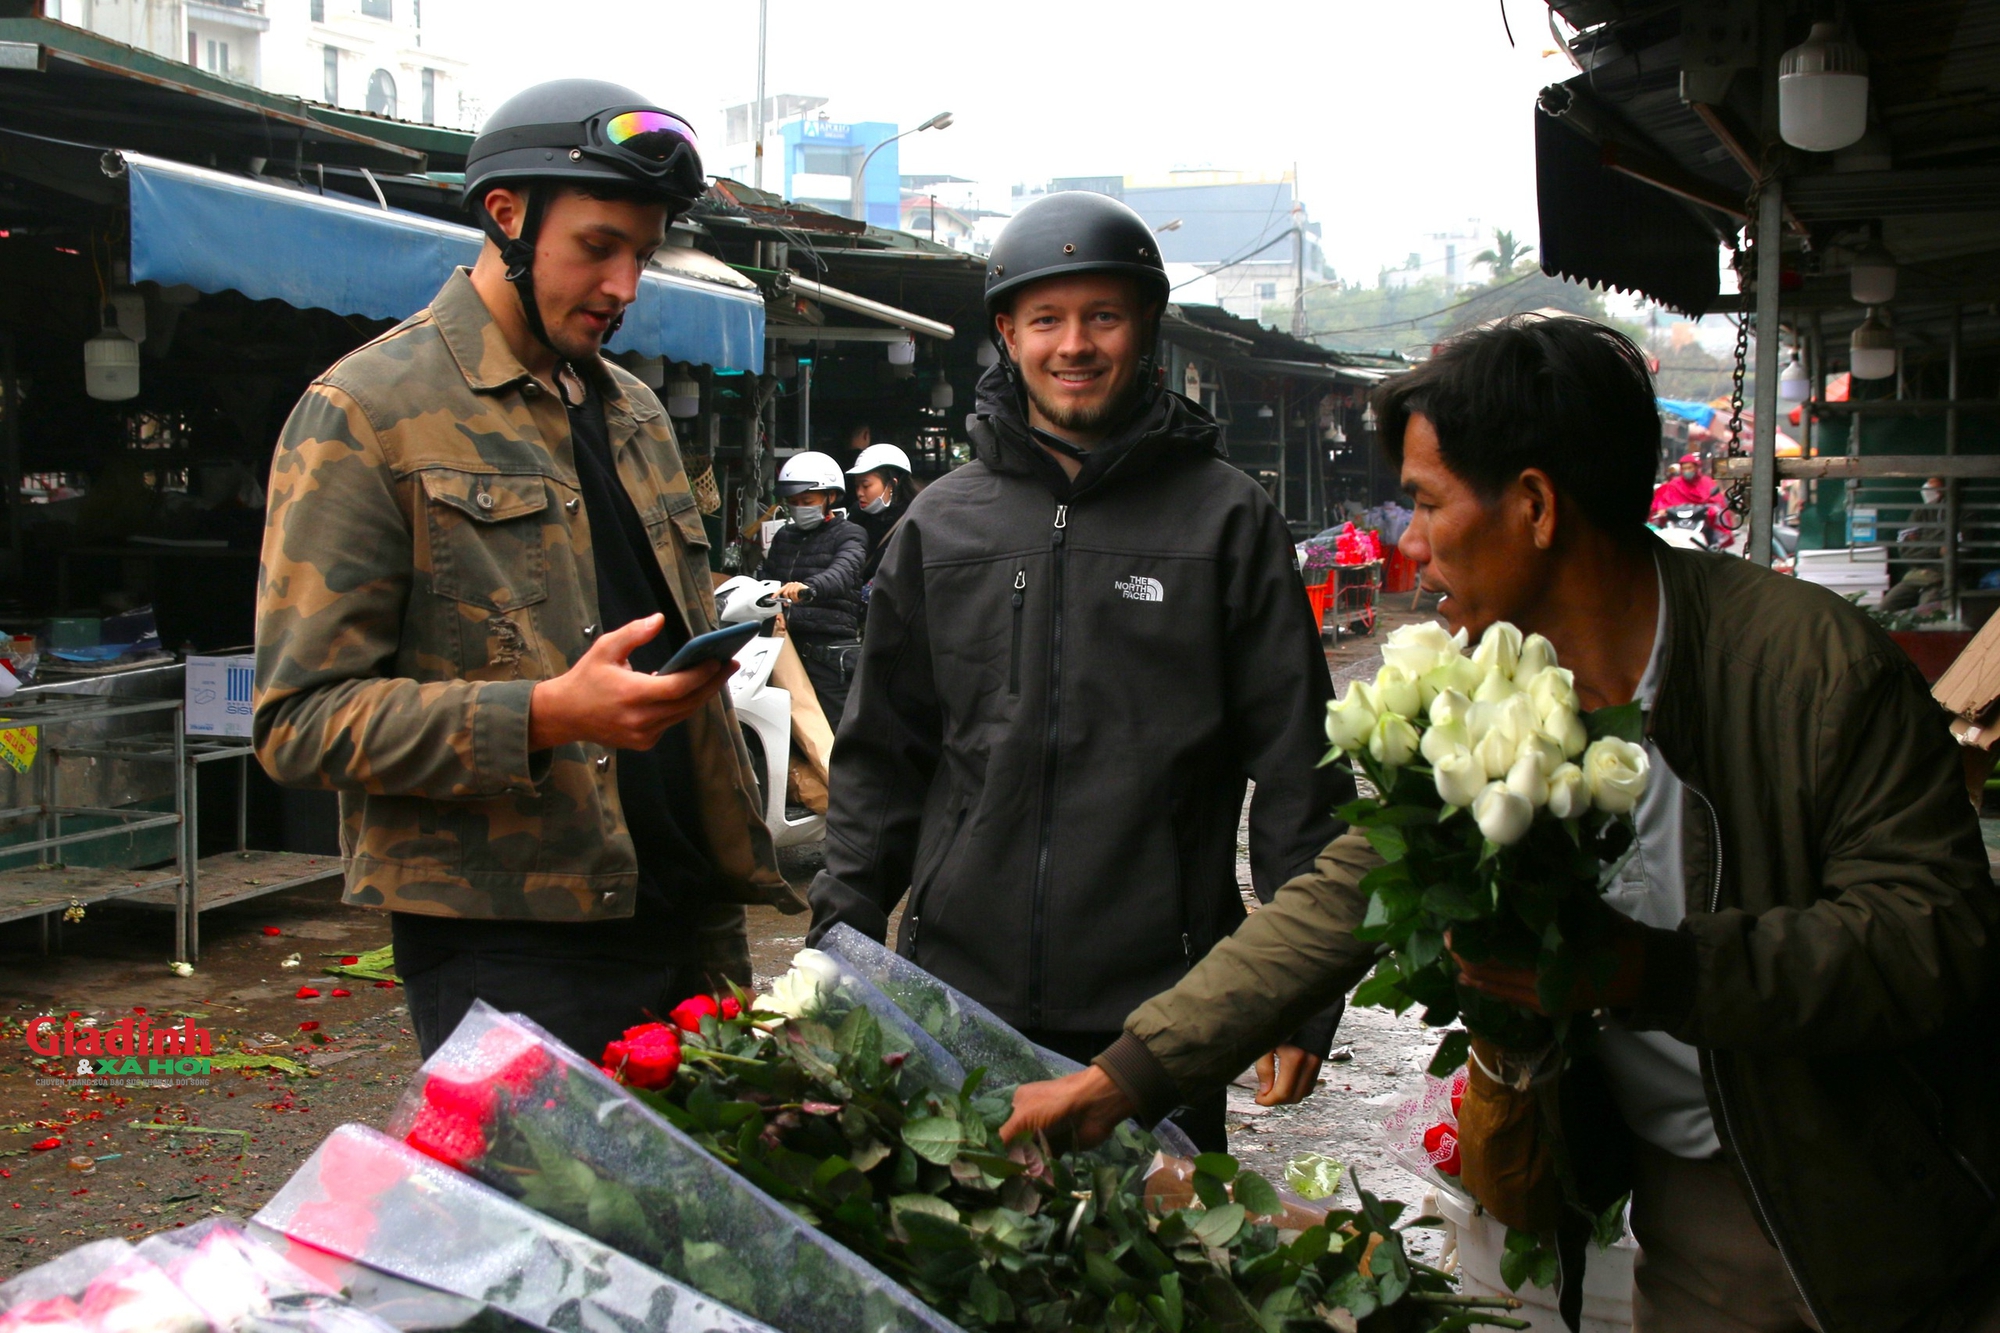 'Cánh mày râu' xuống phố, đi chợ mua hoa tặng người thân nhân ngày 8/3  - Ảnh 5.